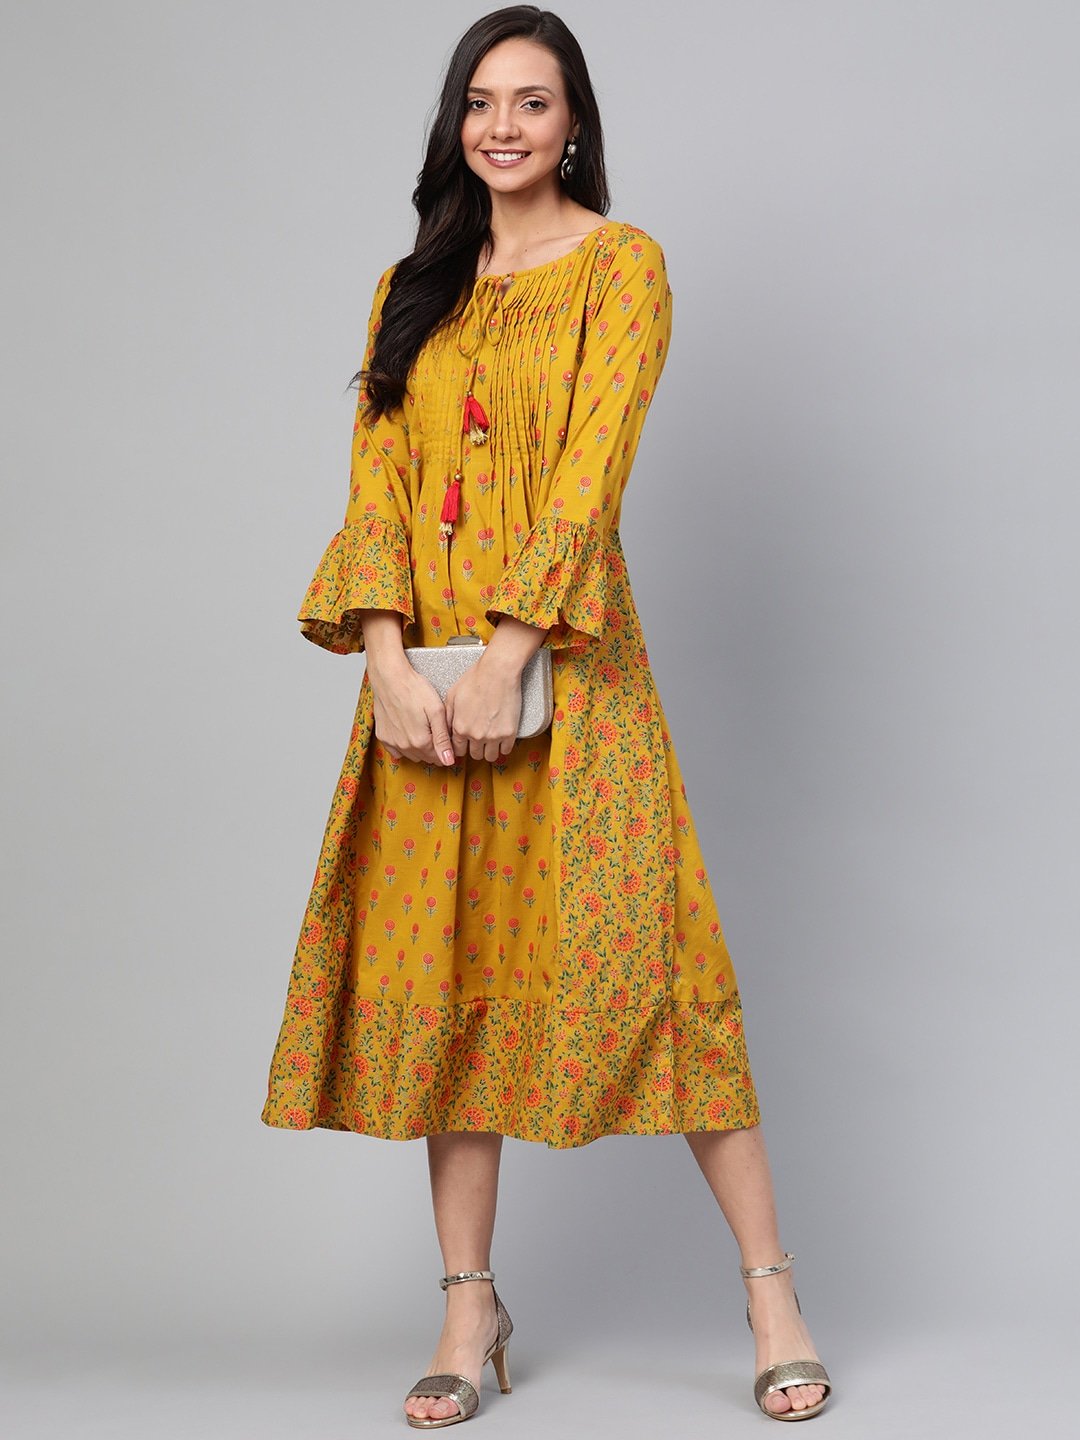 Women's Mustard Printed Dress - Yufta